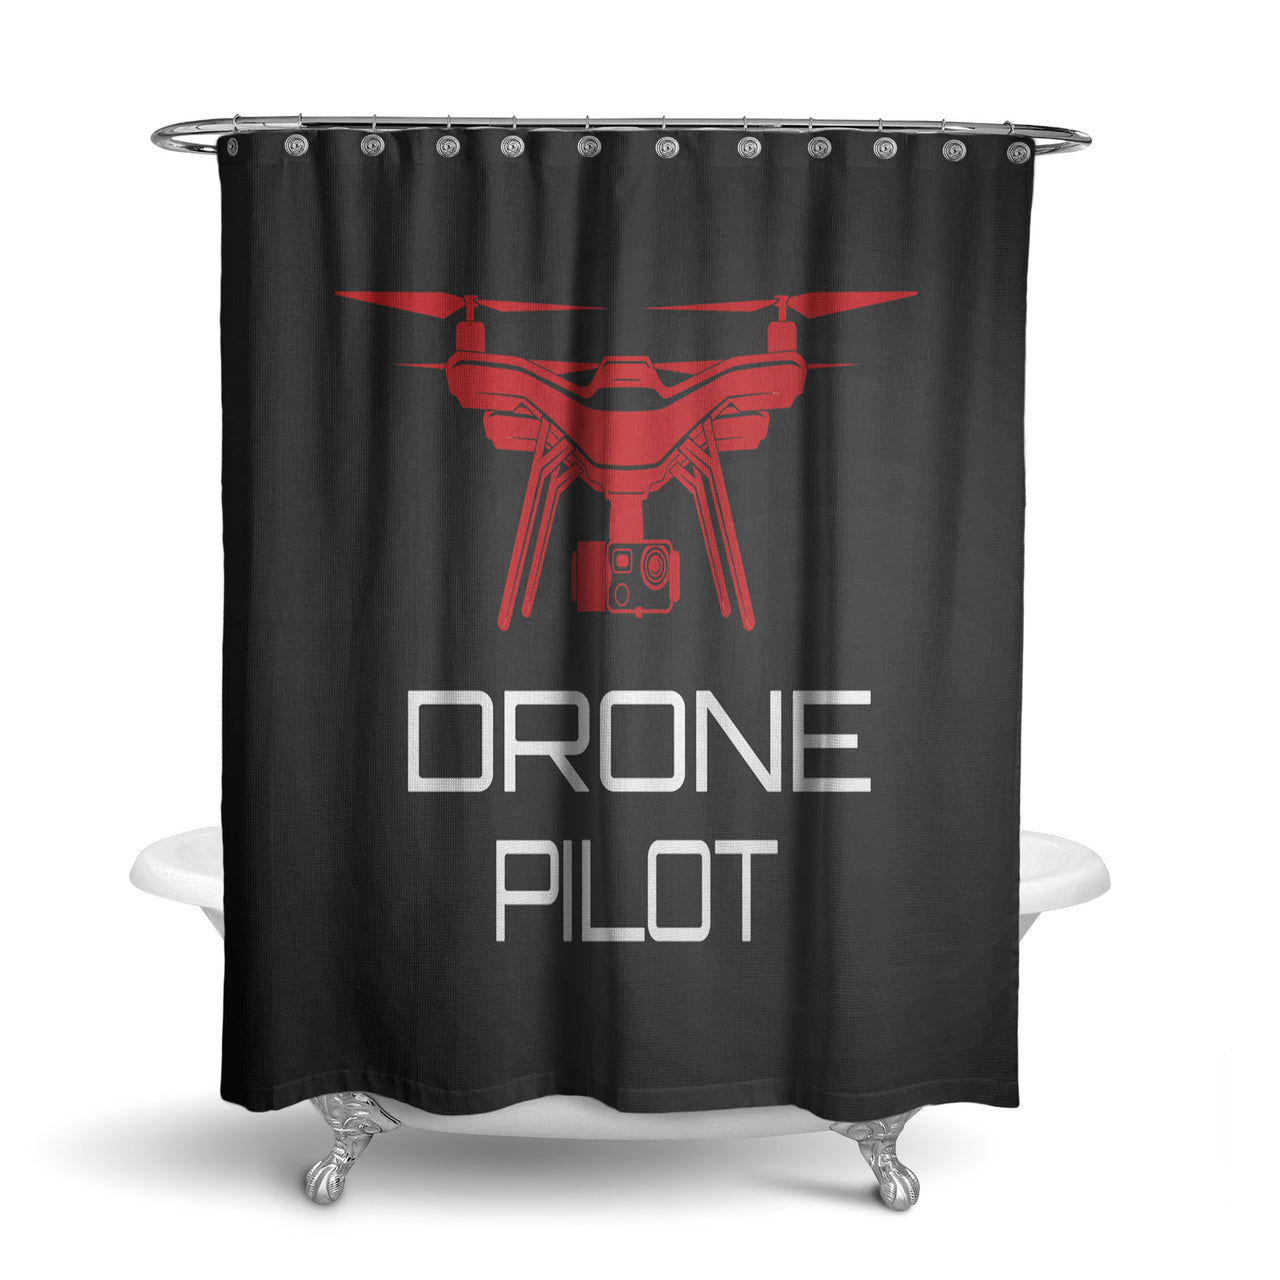 Drone Pilot Black Designed Shower Curtains